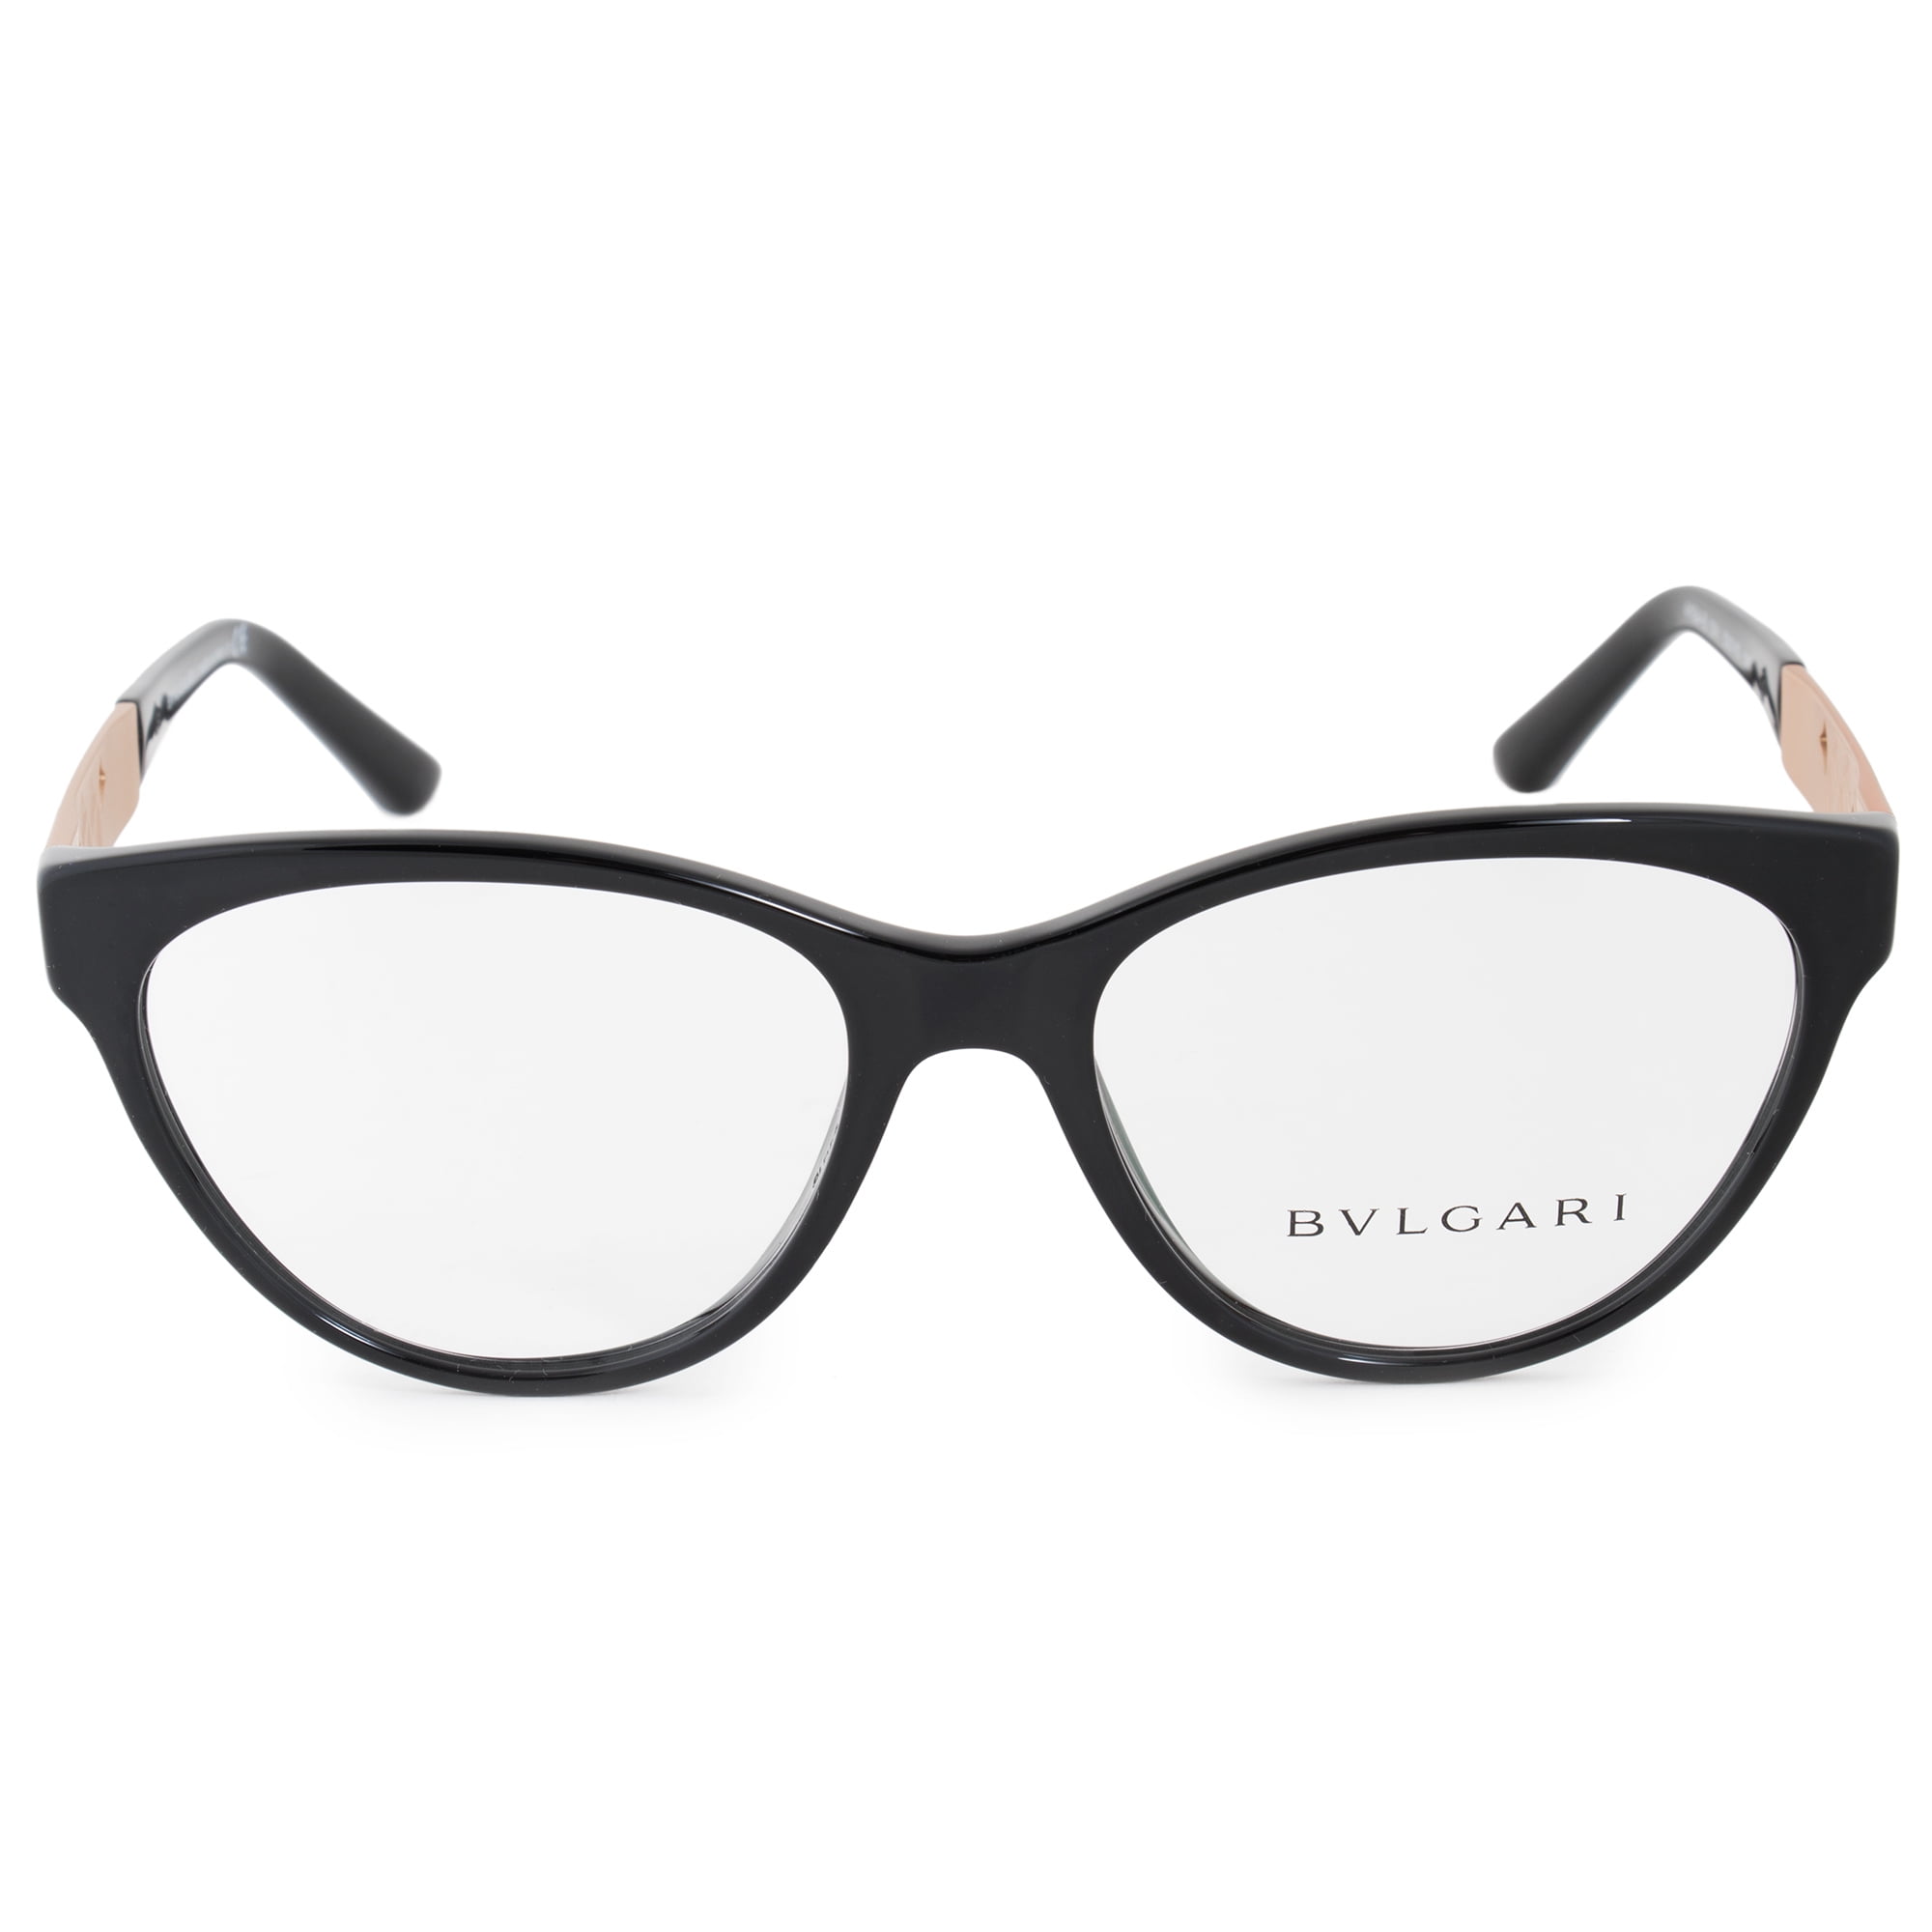 bvlgari glasses frames